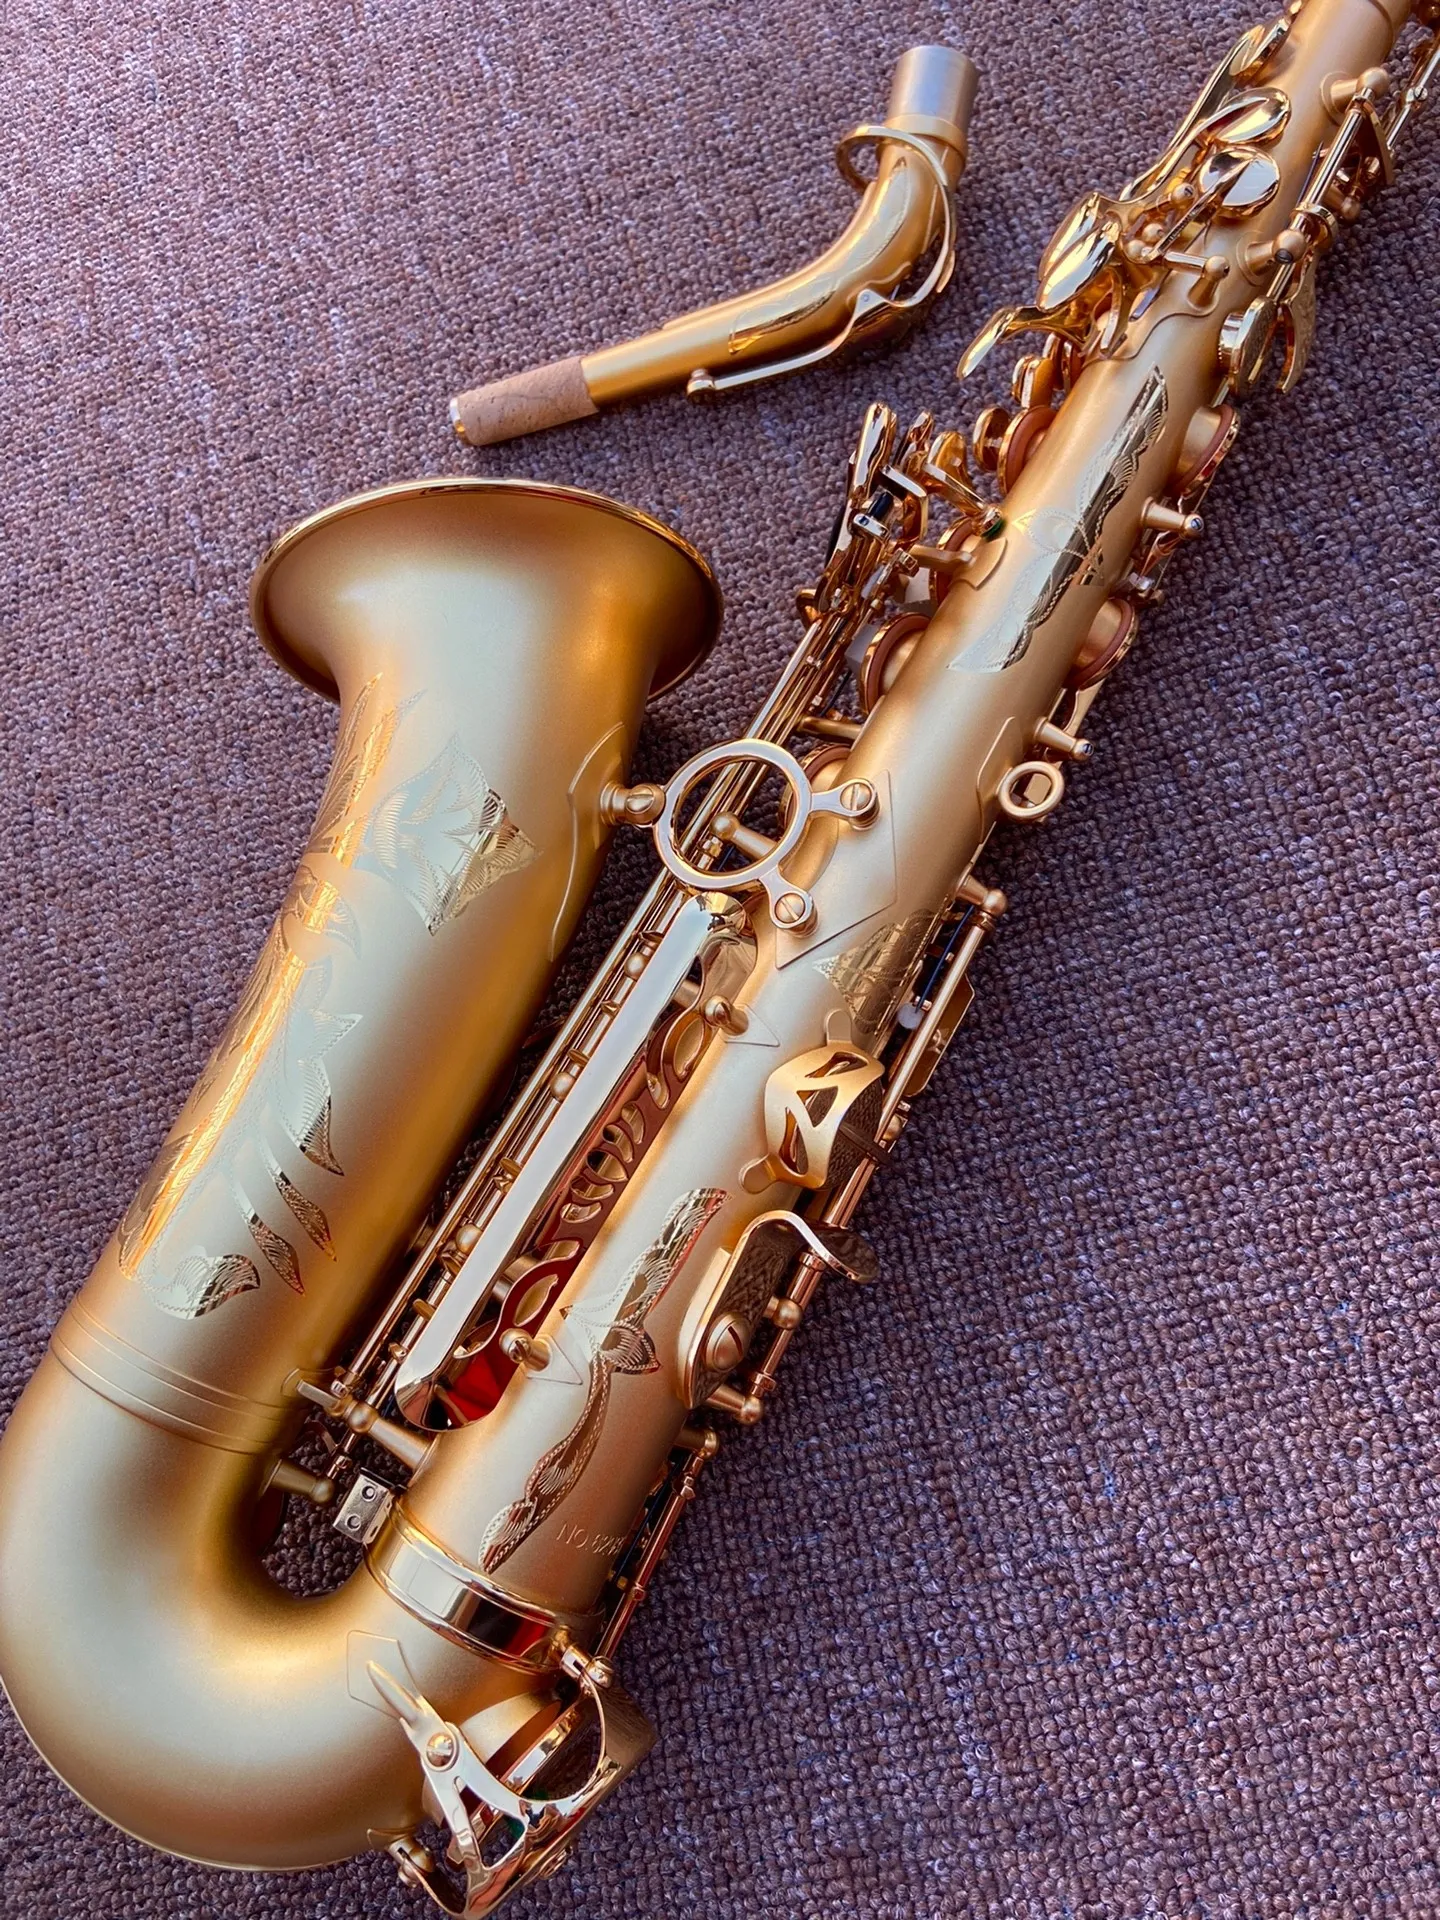 Профессиональный альт-саксофон из конопли с золотым покрытием Etone 54, высококачественный матовый процесс из чистого золота, альт-саксофон, джазовый инструмент